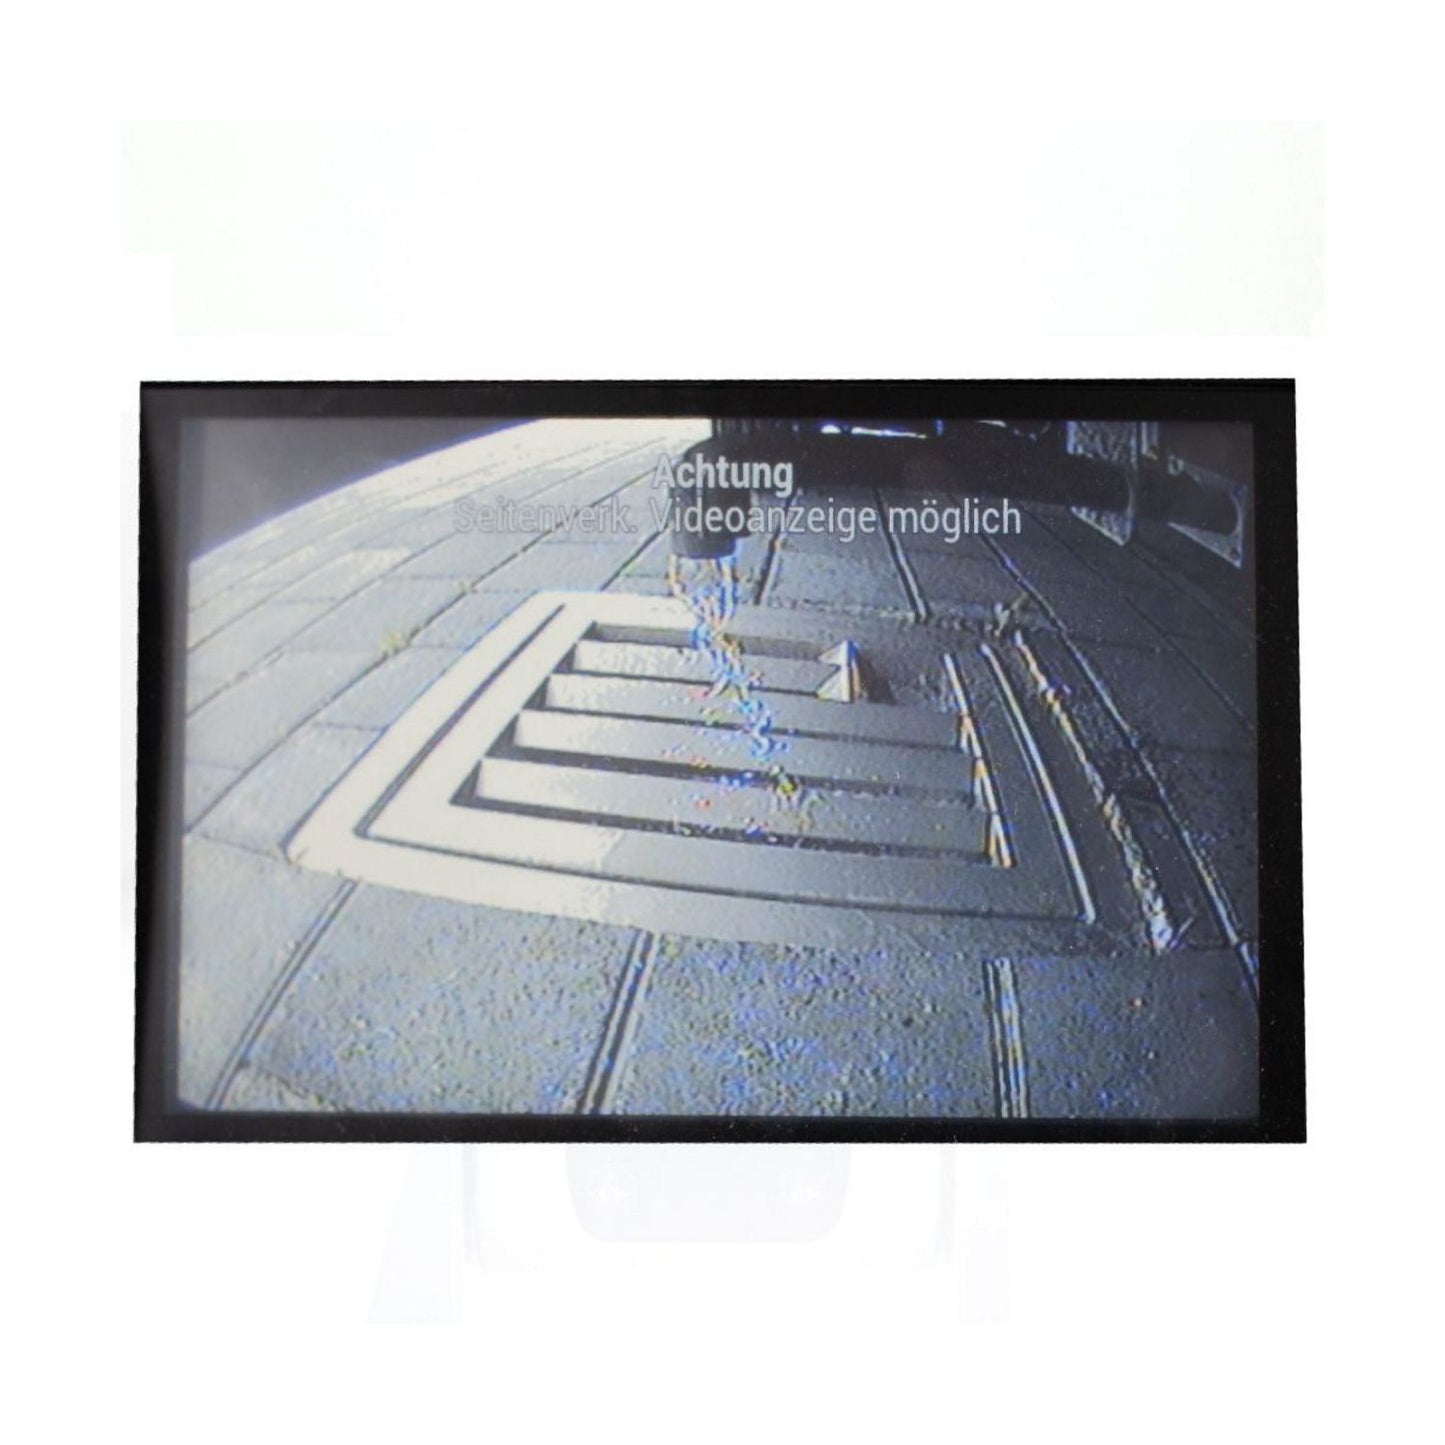 Caratec Safety CS105ULA Unterboden-Kamera mit Kabel